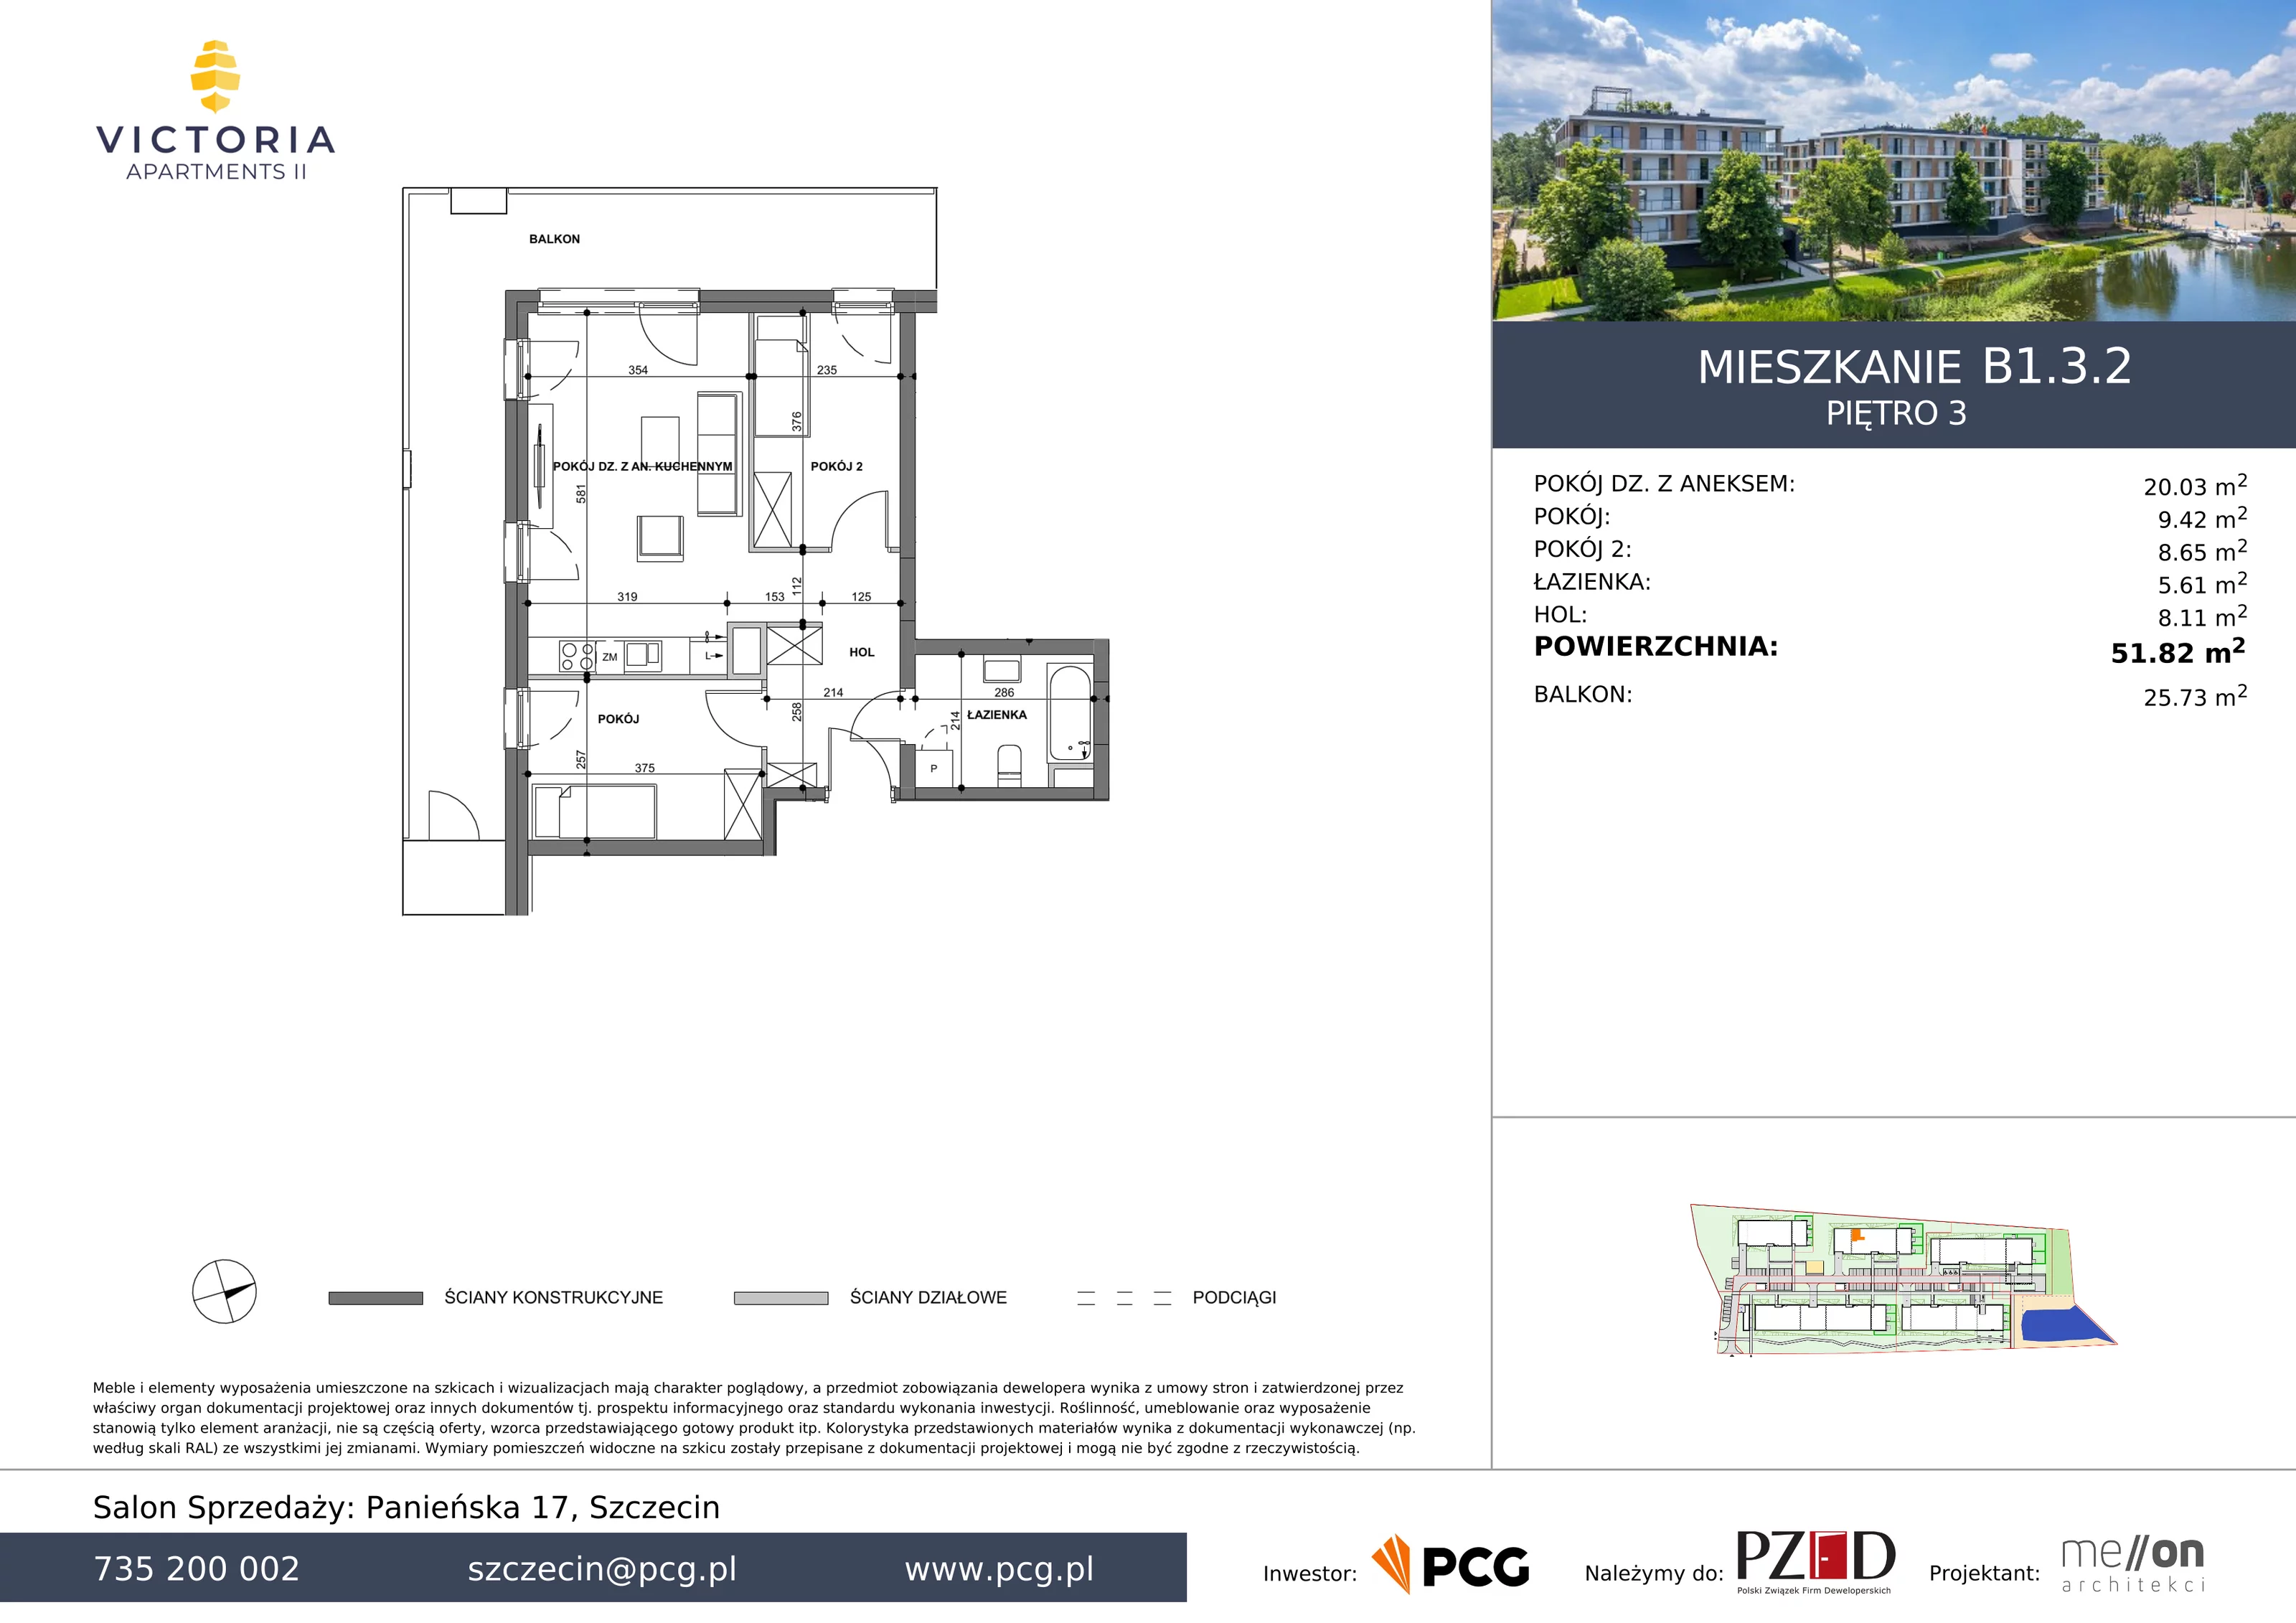 Apartament 51,82 m², piętro 3, oferta nr B1.3.2, Victoria Apartments II, Szczecin, Prawobrzeże, Dąbie, ul. Przestrzenna